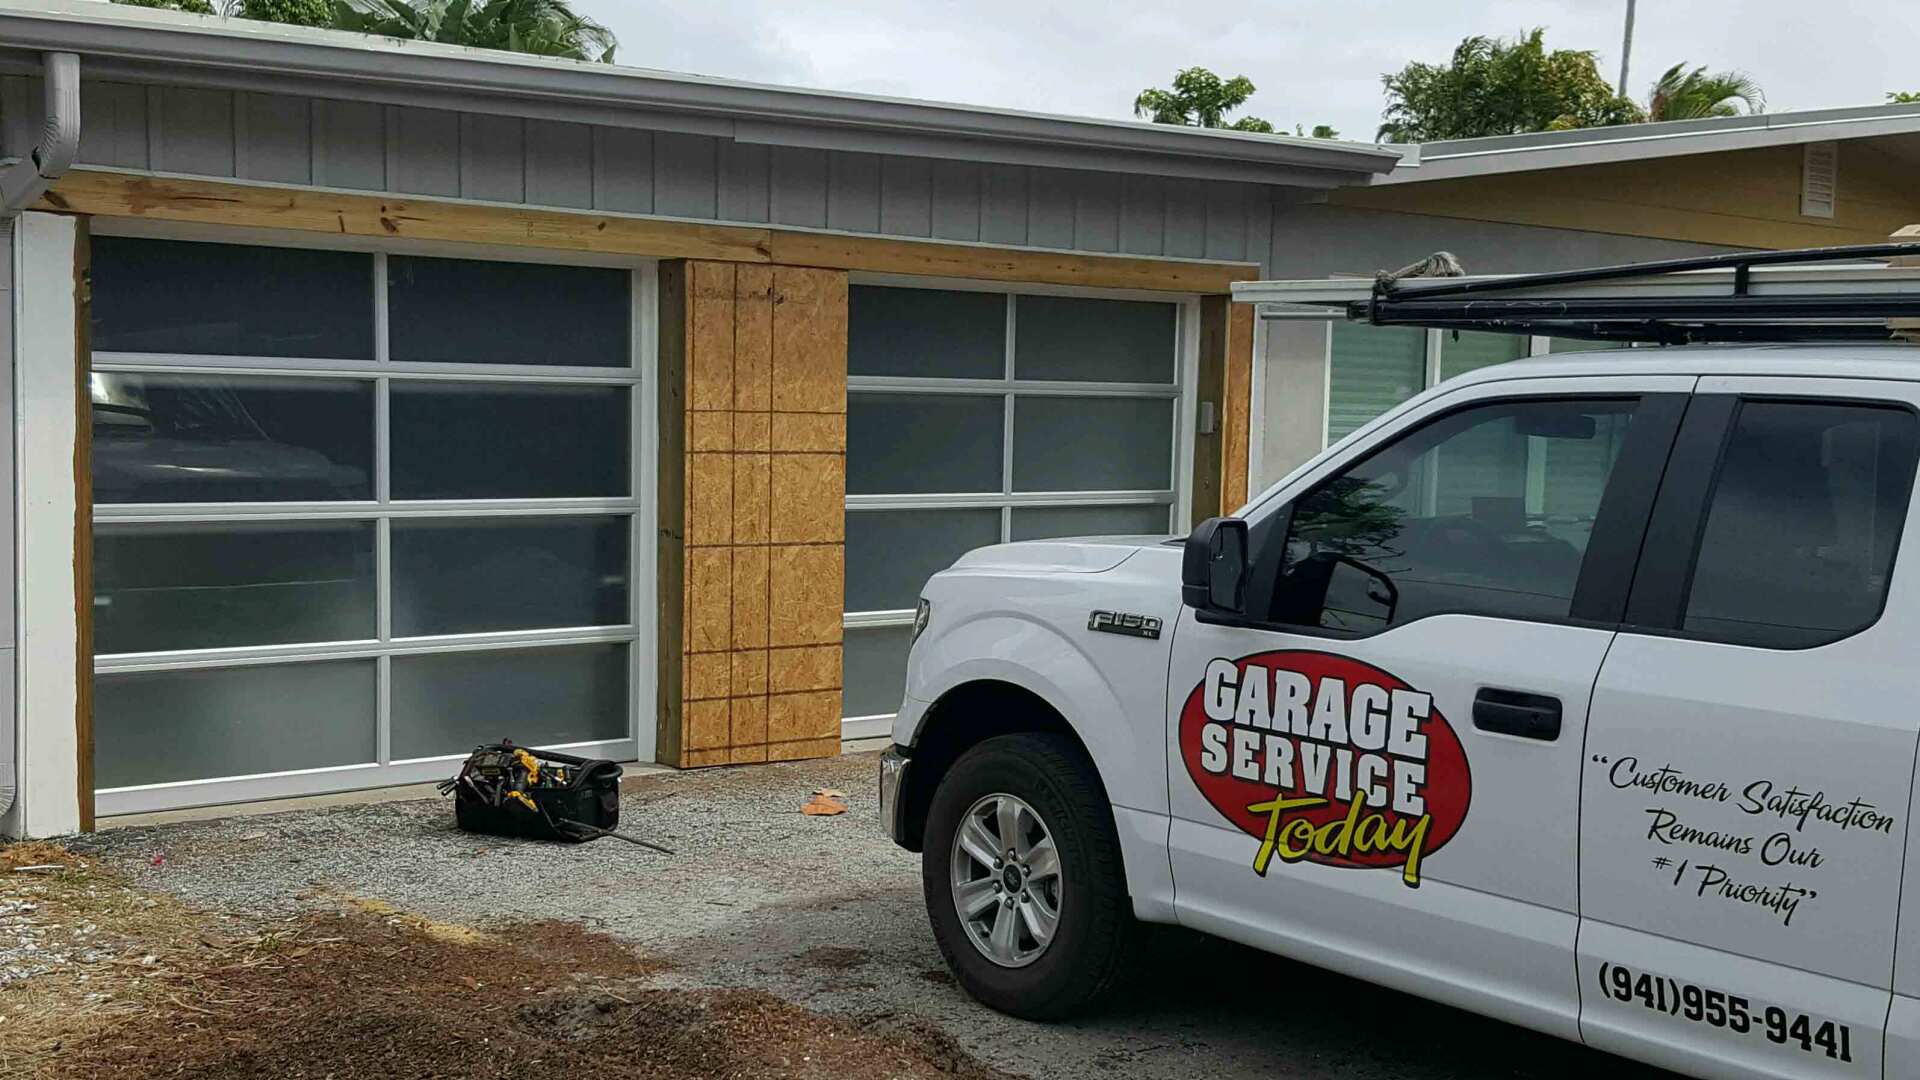 New Garage Door Parts Venice Fl for Living room